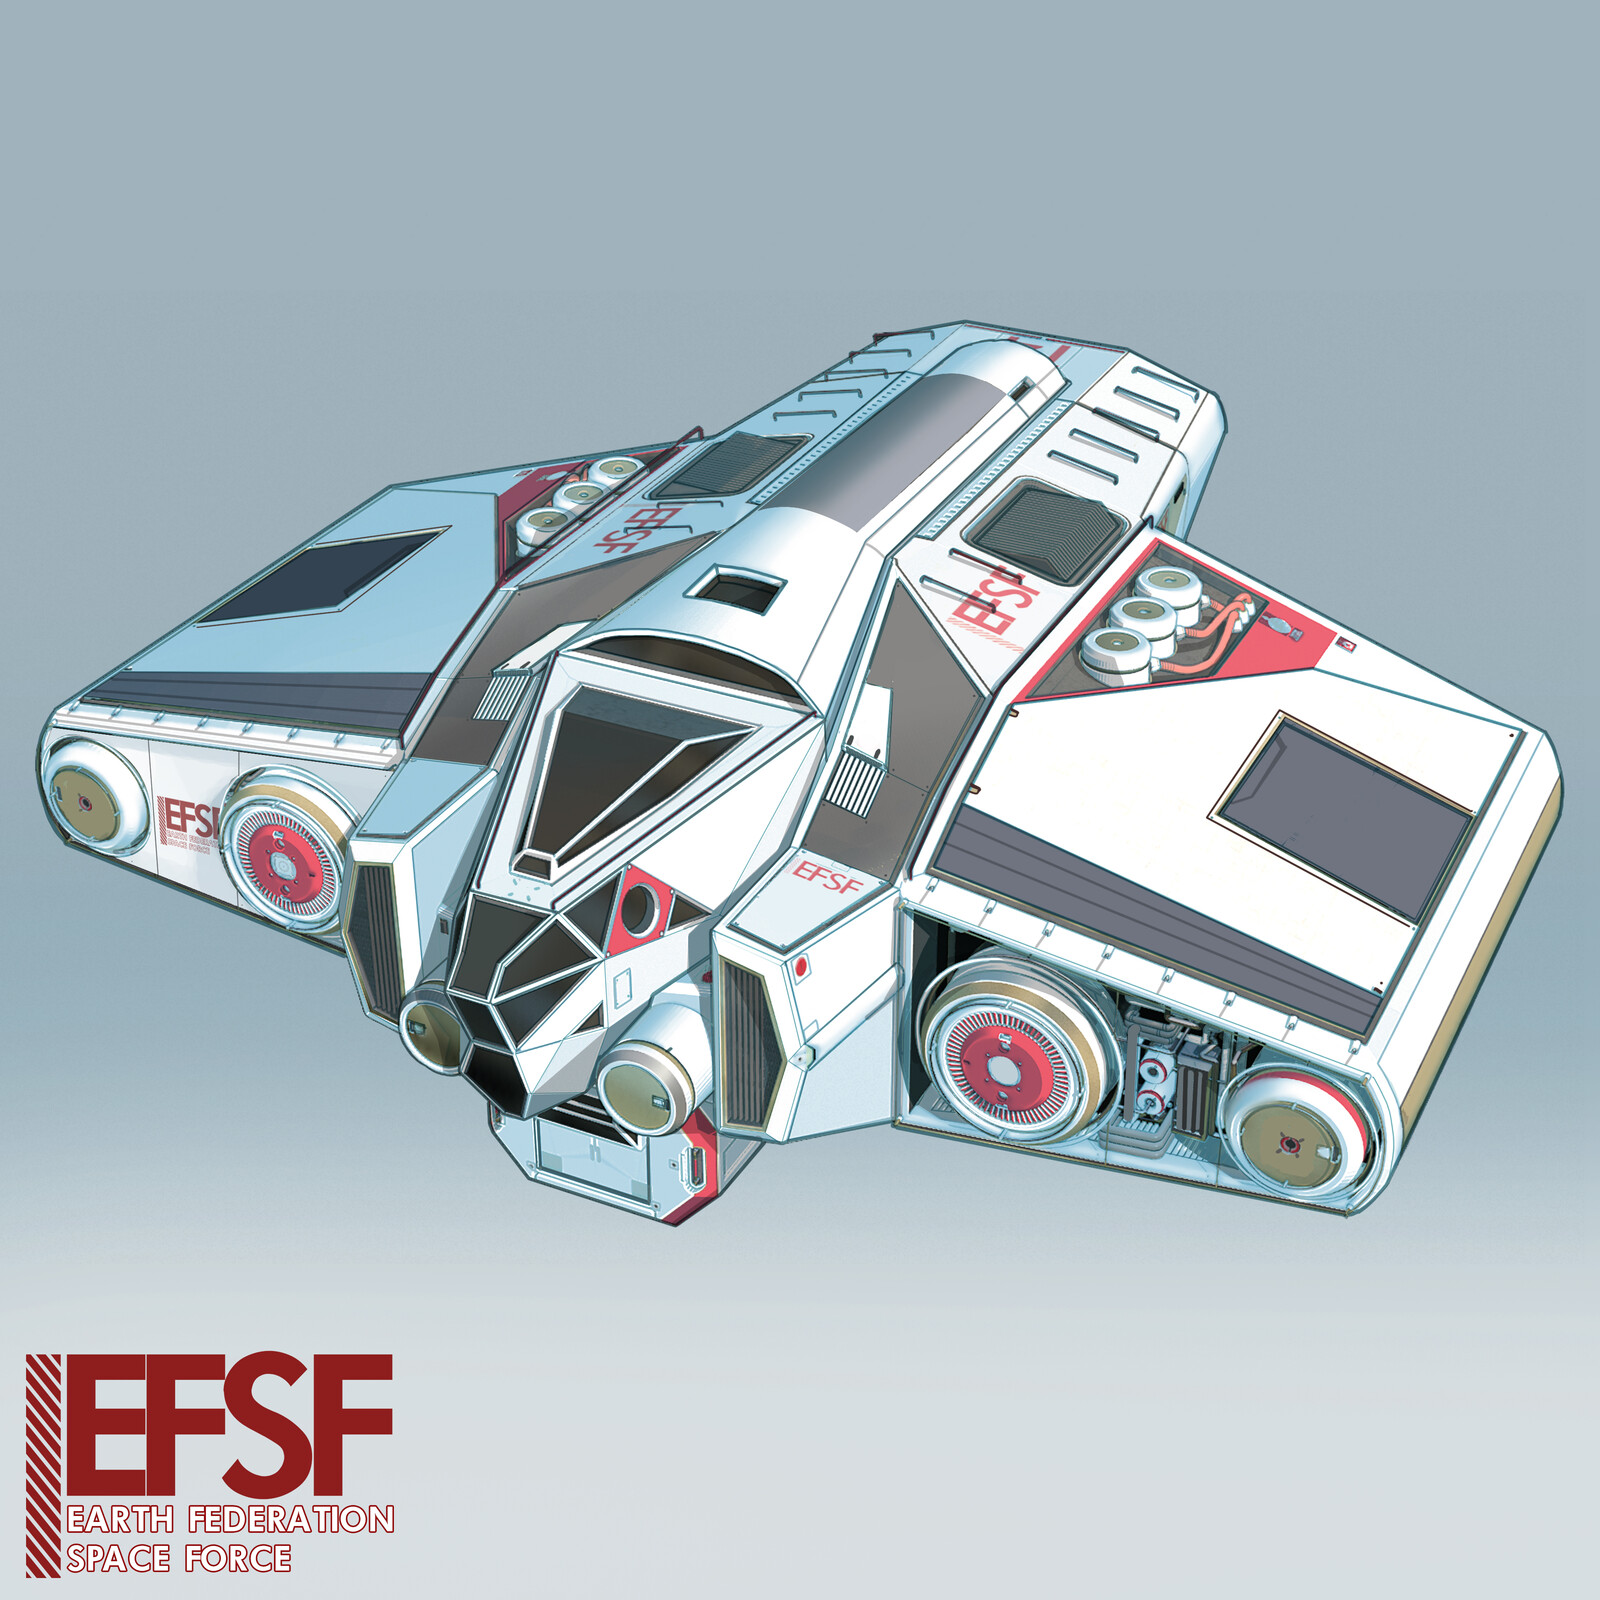 EFSF Spaceship